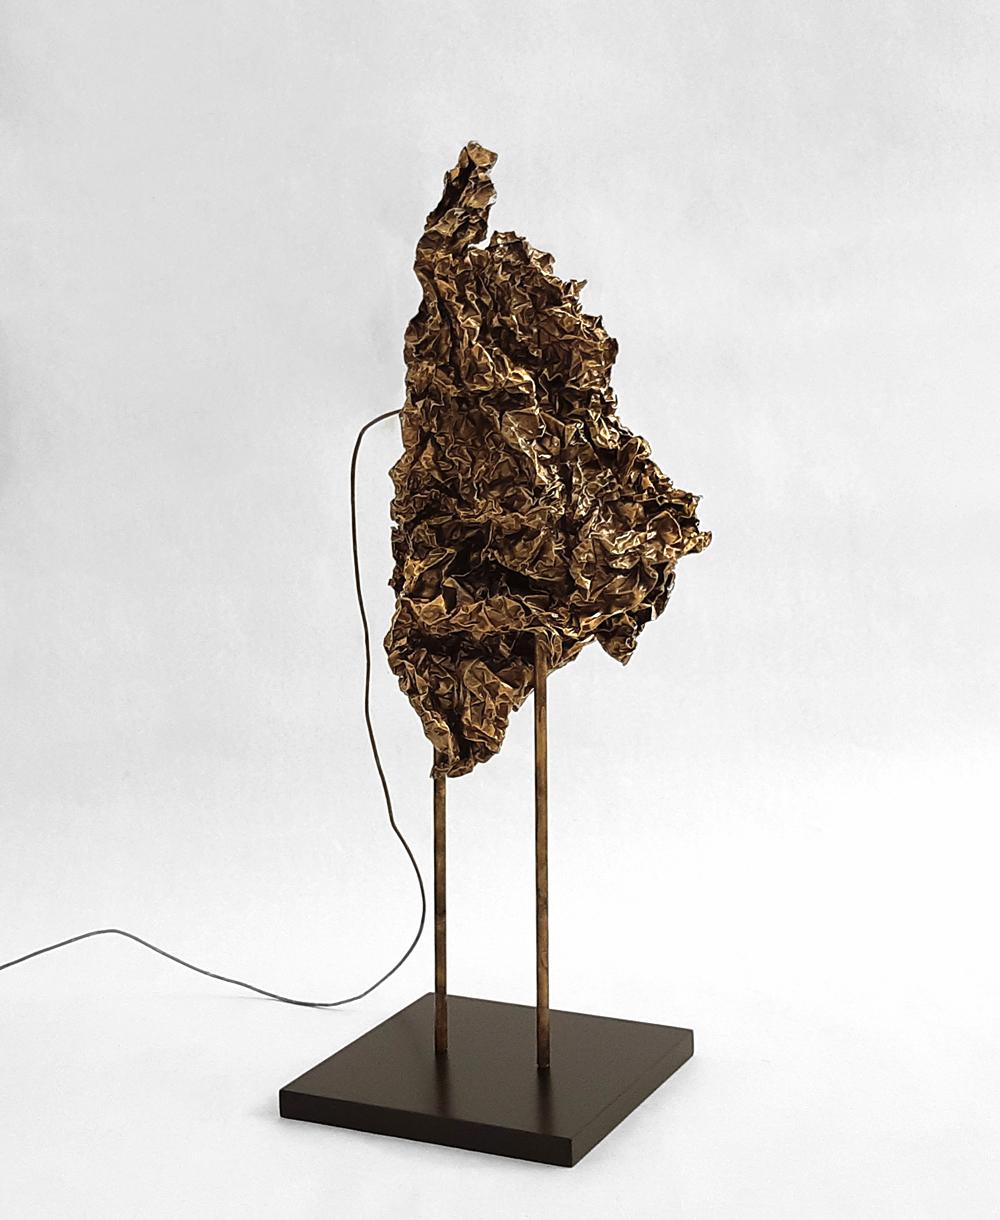 Aluminum Crushed Sculptural Lamp, Isac Elam Kaid